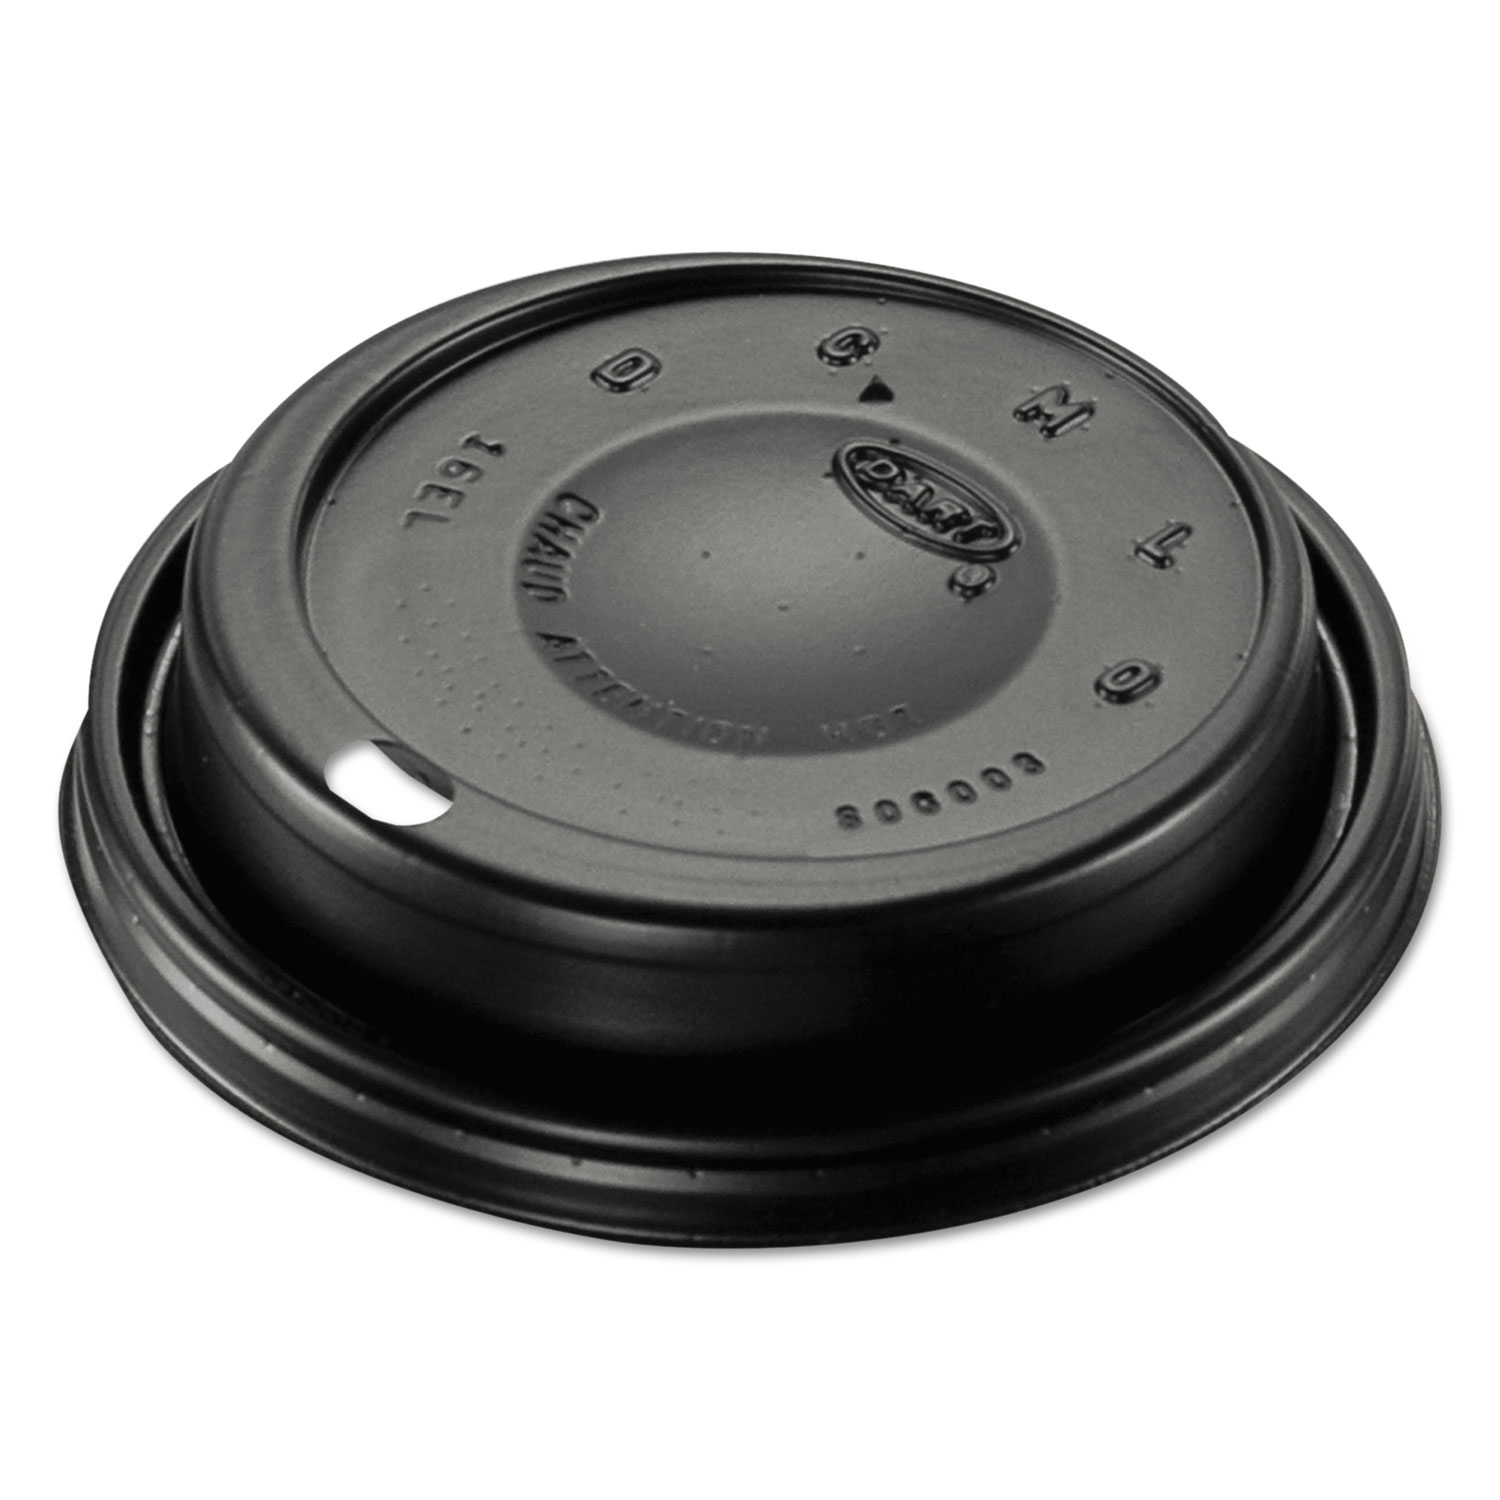  Dart 16ELBLK Cappuccino Dome Sipper Lids, Black, Plastic, 100/Pack, 10 Packs/Carton (DCC16ELBLK) 